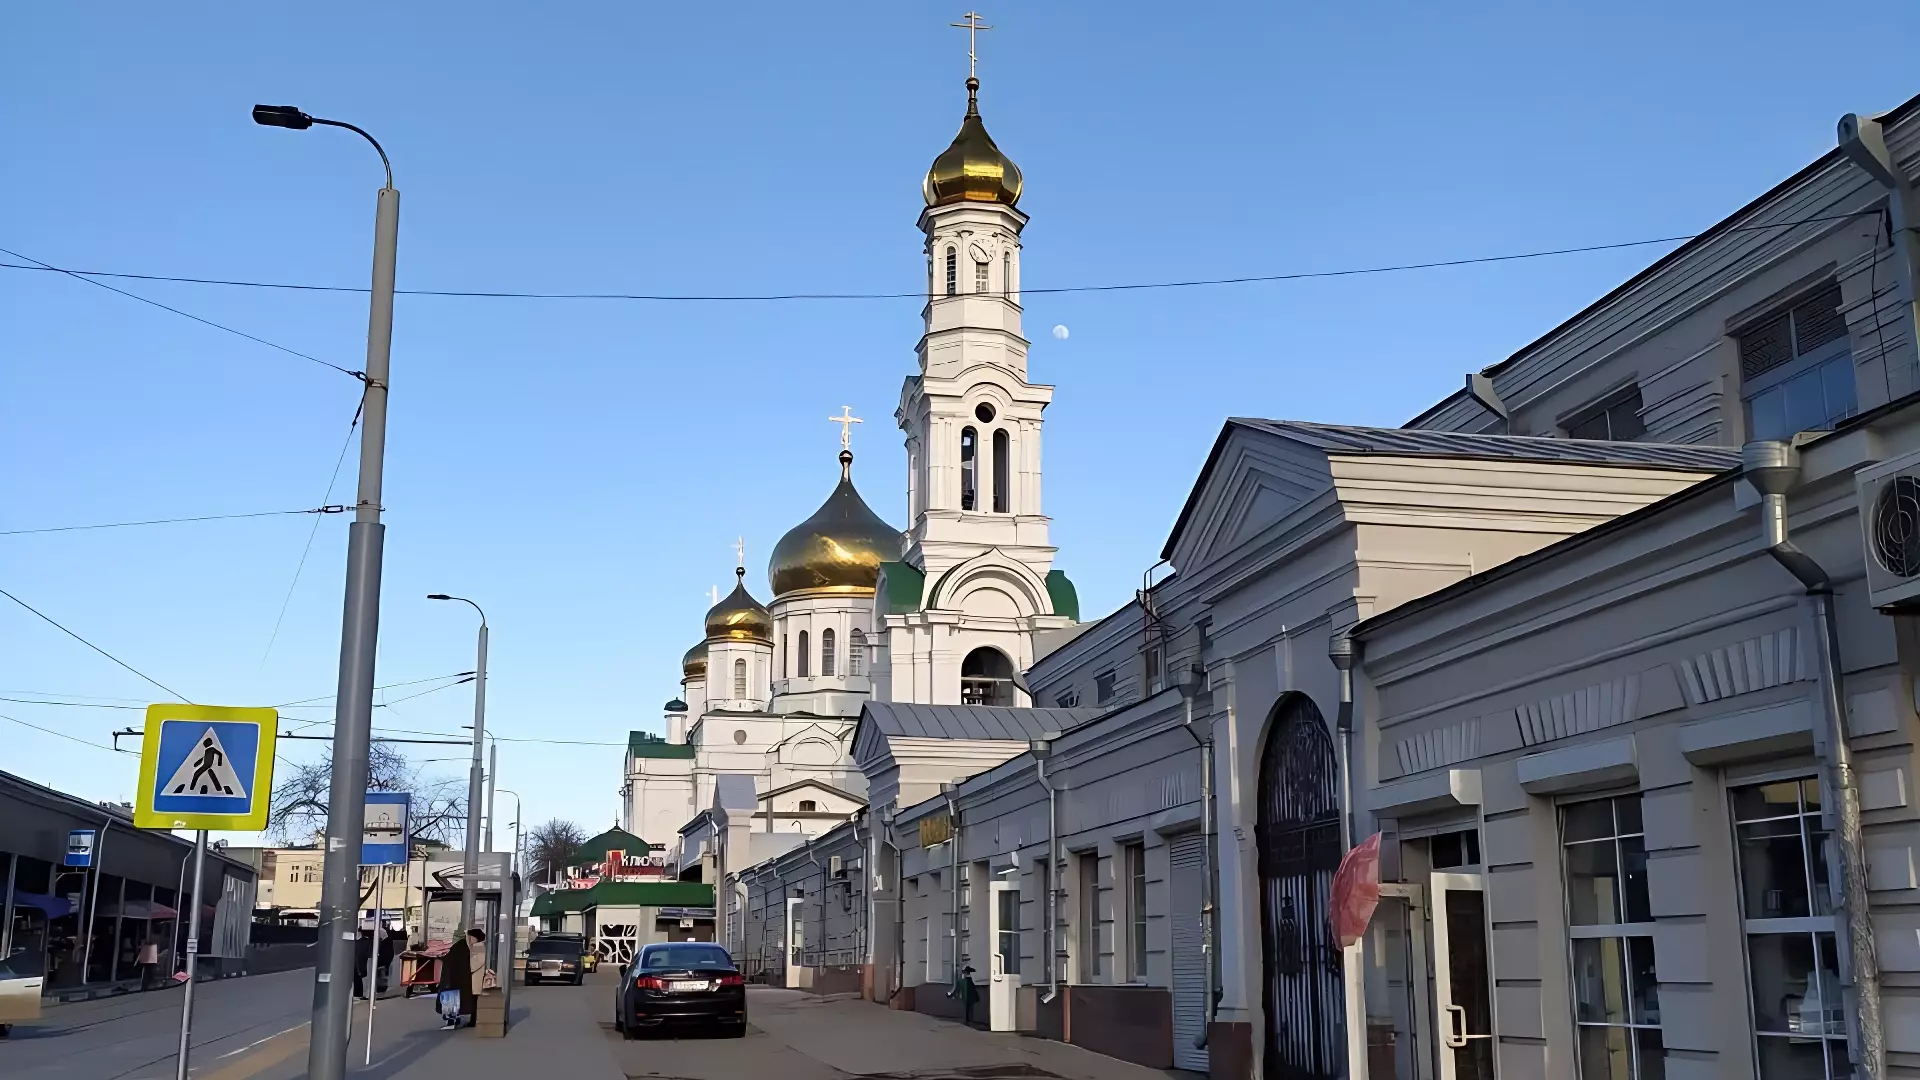 Названы 6 главных причин посетить Ростов. Зачем туристы сюда приезжают